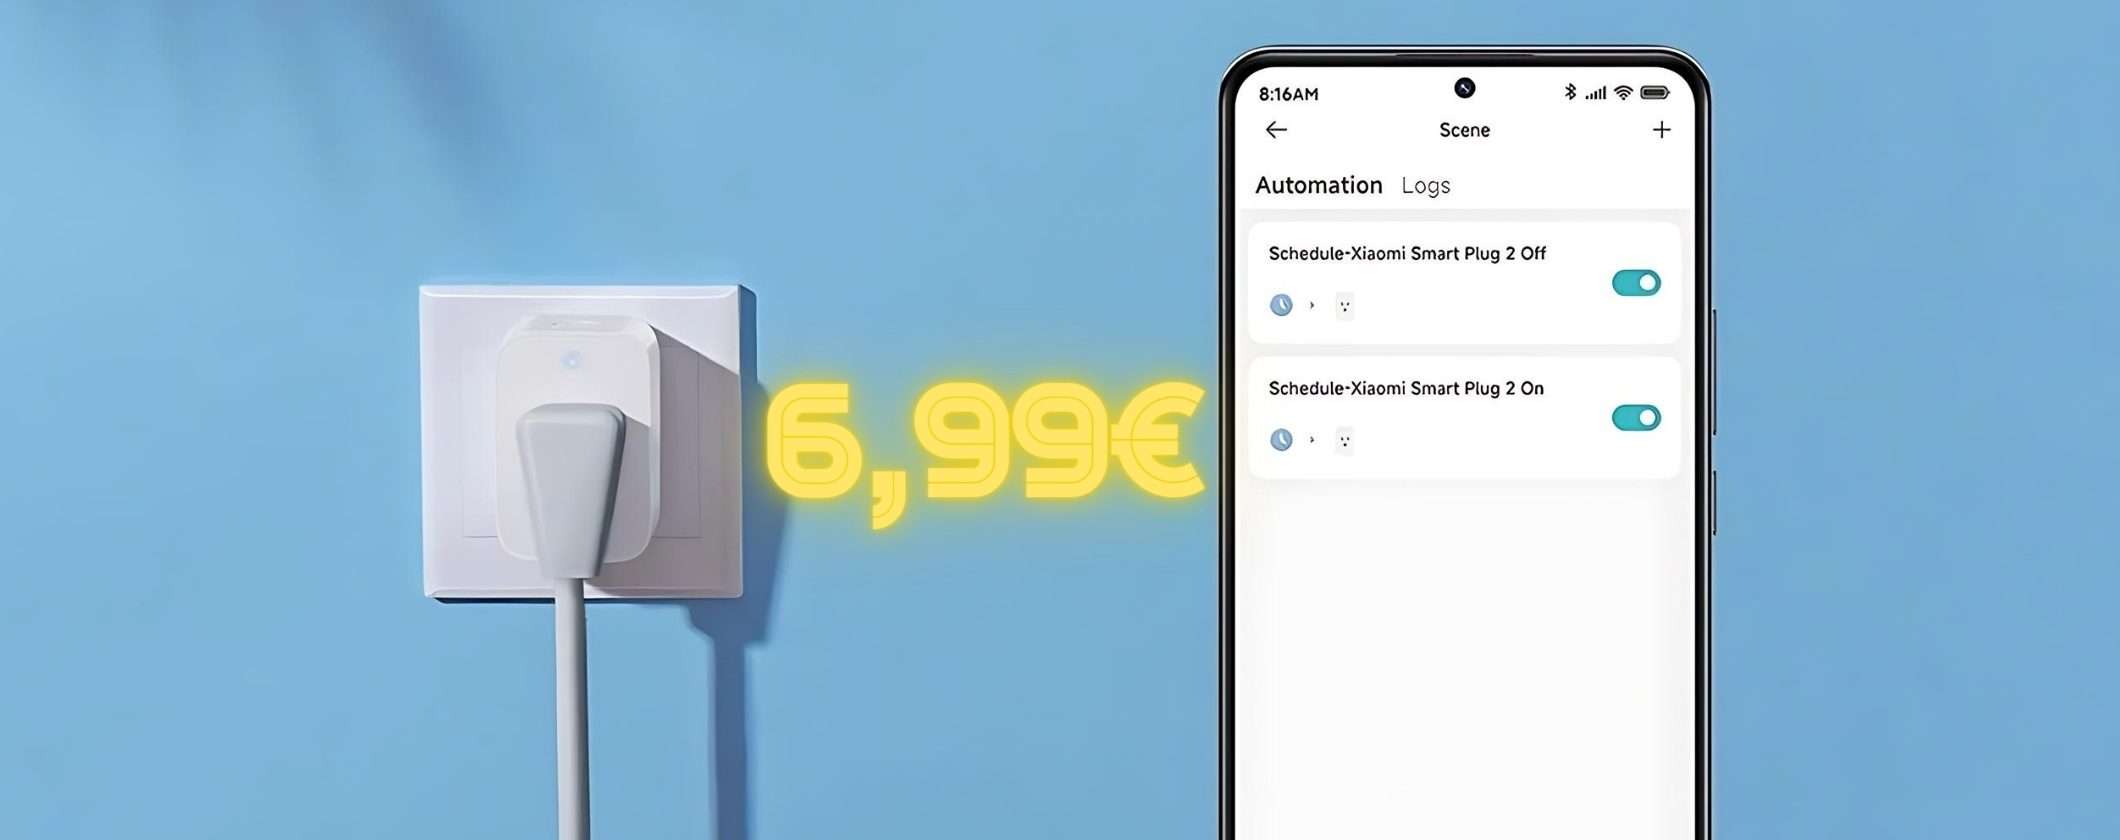 Xiaomi Smart Plug 2: presa smart in OFFERTA a 6€ solo per oggi